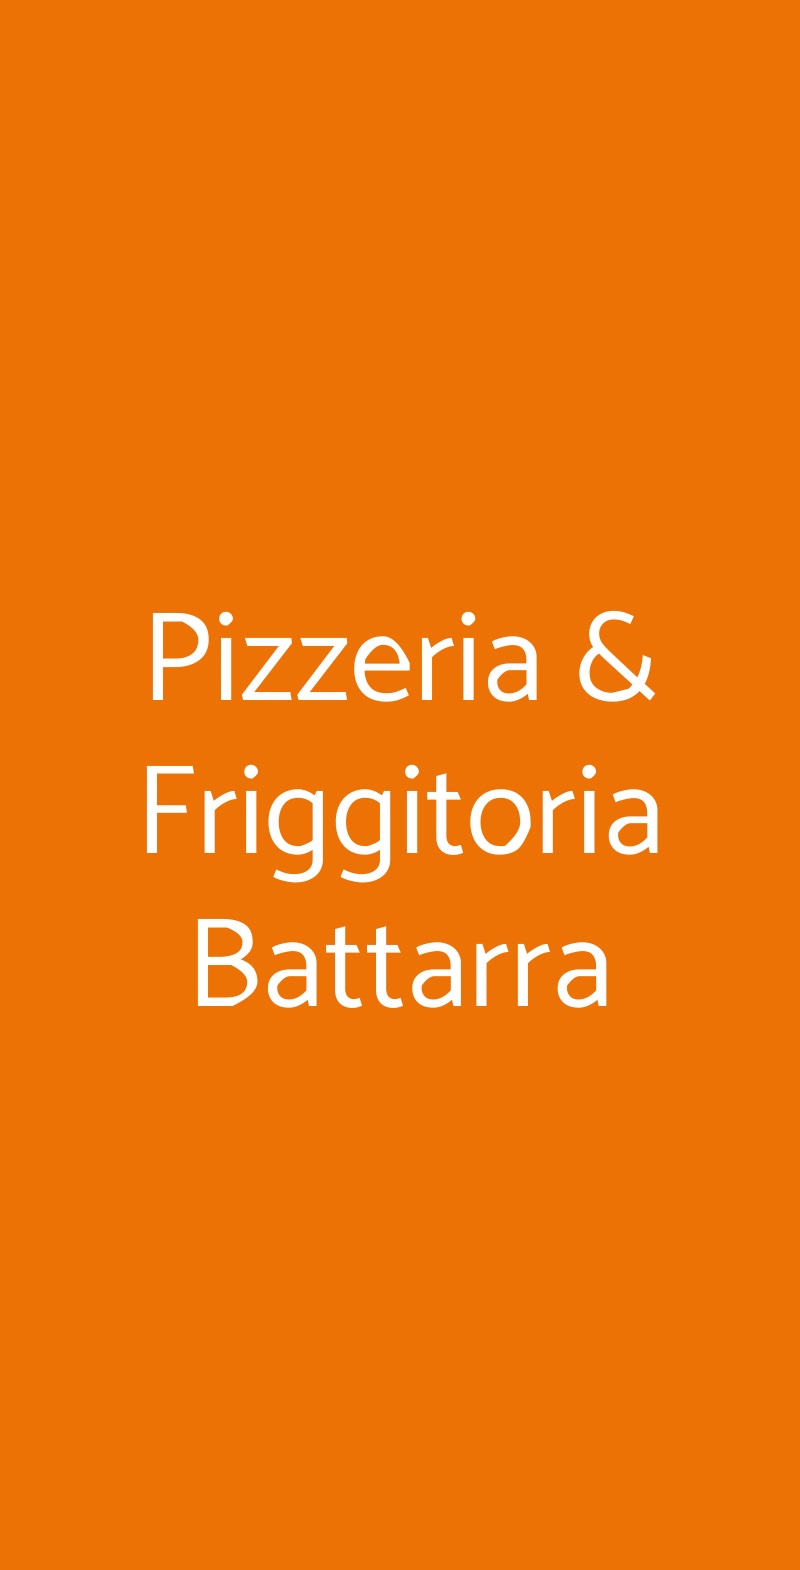 Pizzeria & Friggitoria Battarra Napoli menù 1 pagina